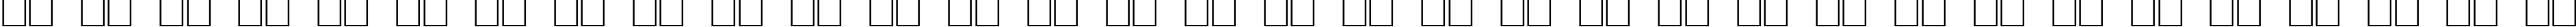 Пример написания русского алфавита шрифтом American Uncial Normal